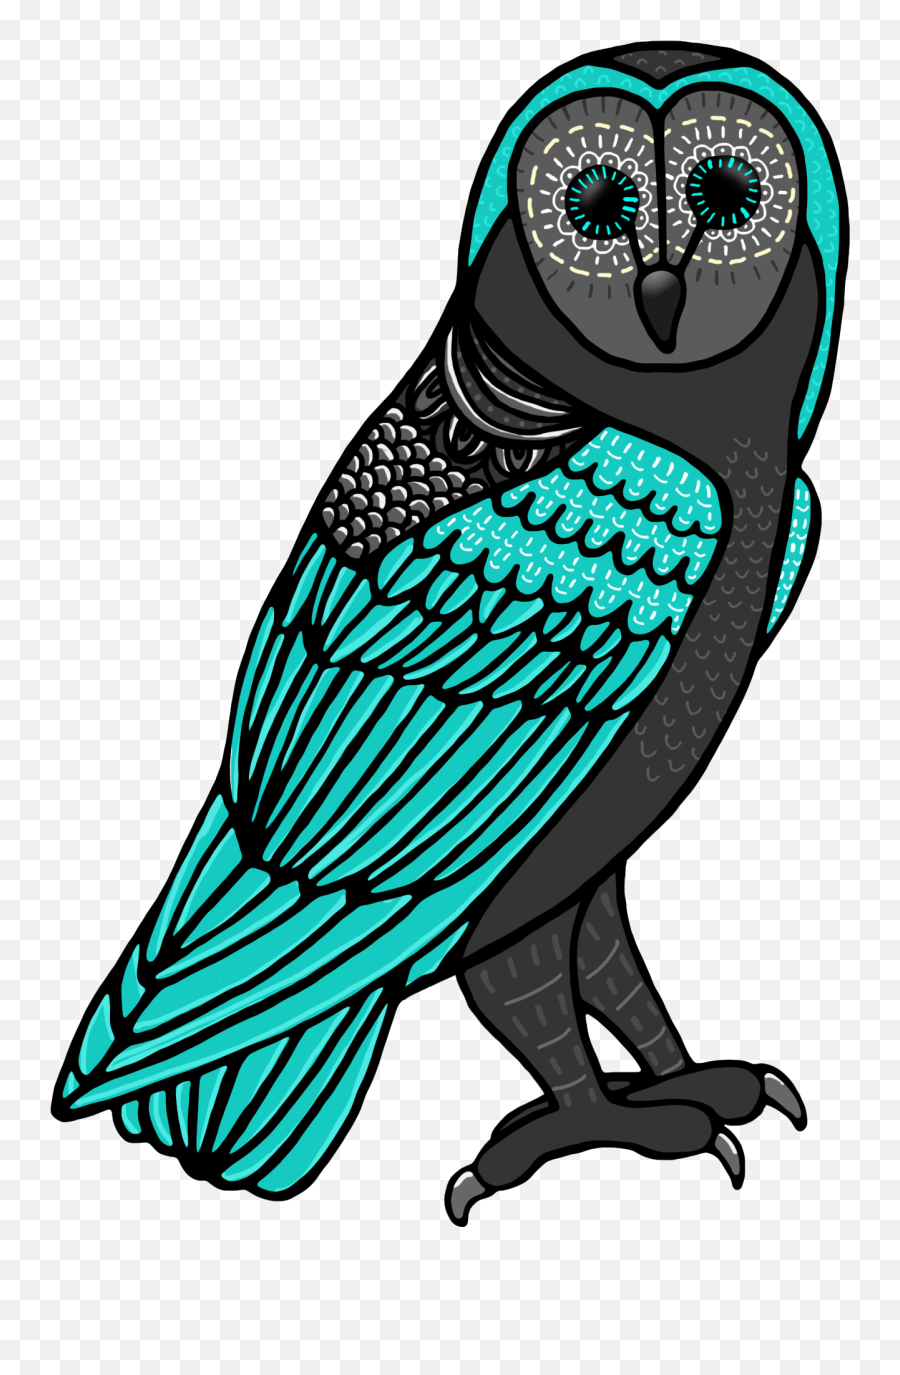 Ch De Teachers Pay Teachers Cute Owl Owls Clip Art Emoji,Cute Owl Halloween Clipart